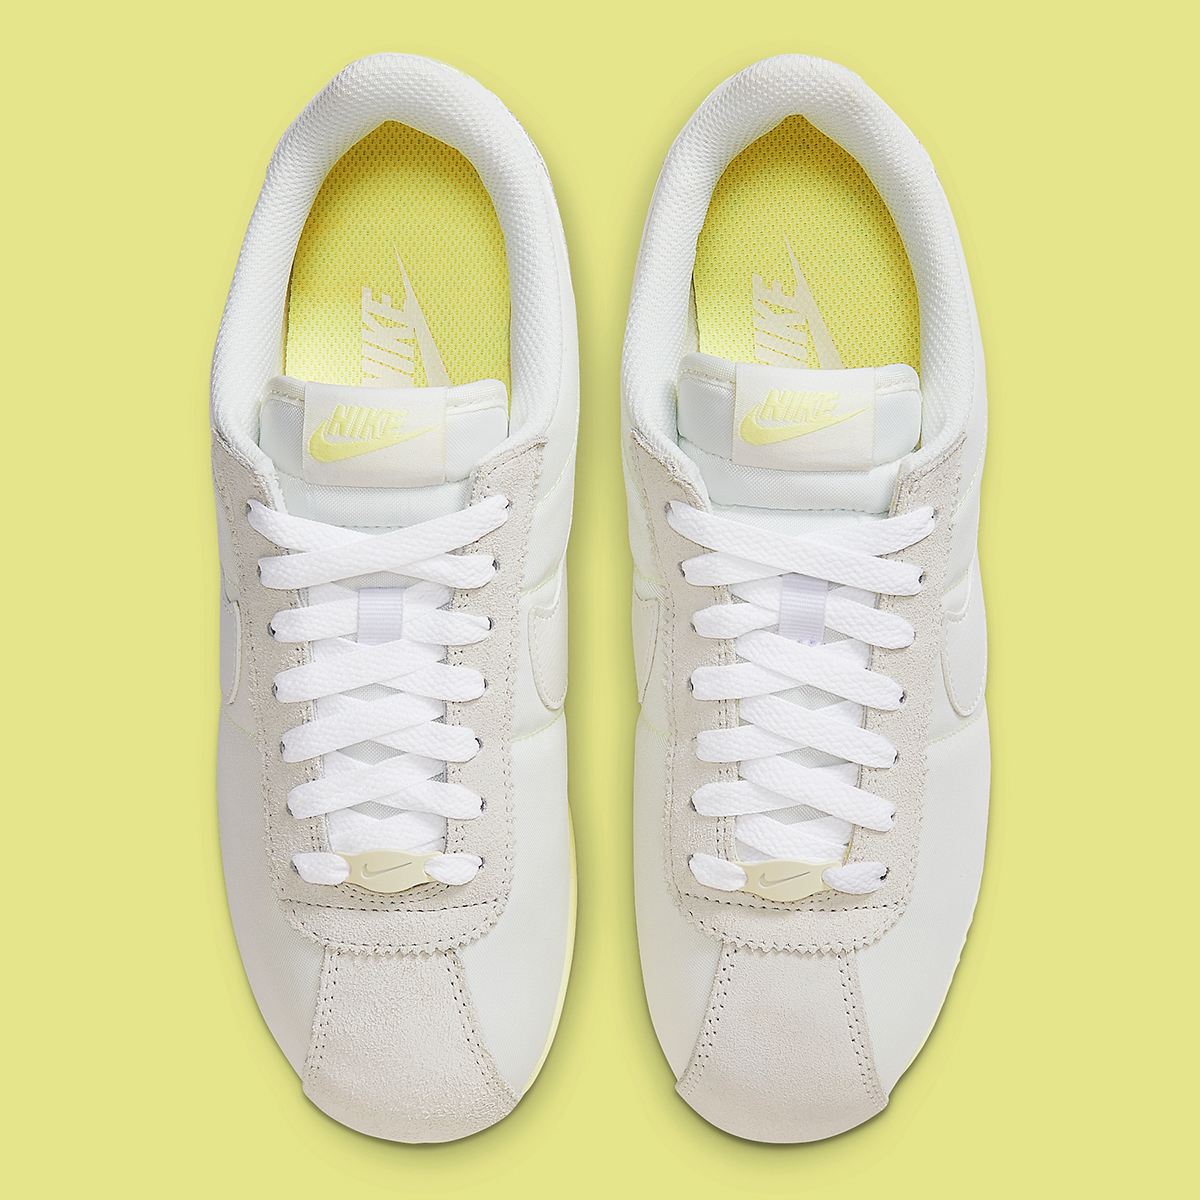 Nike Cortez White Pale Yellow Hf6410 118 7